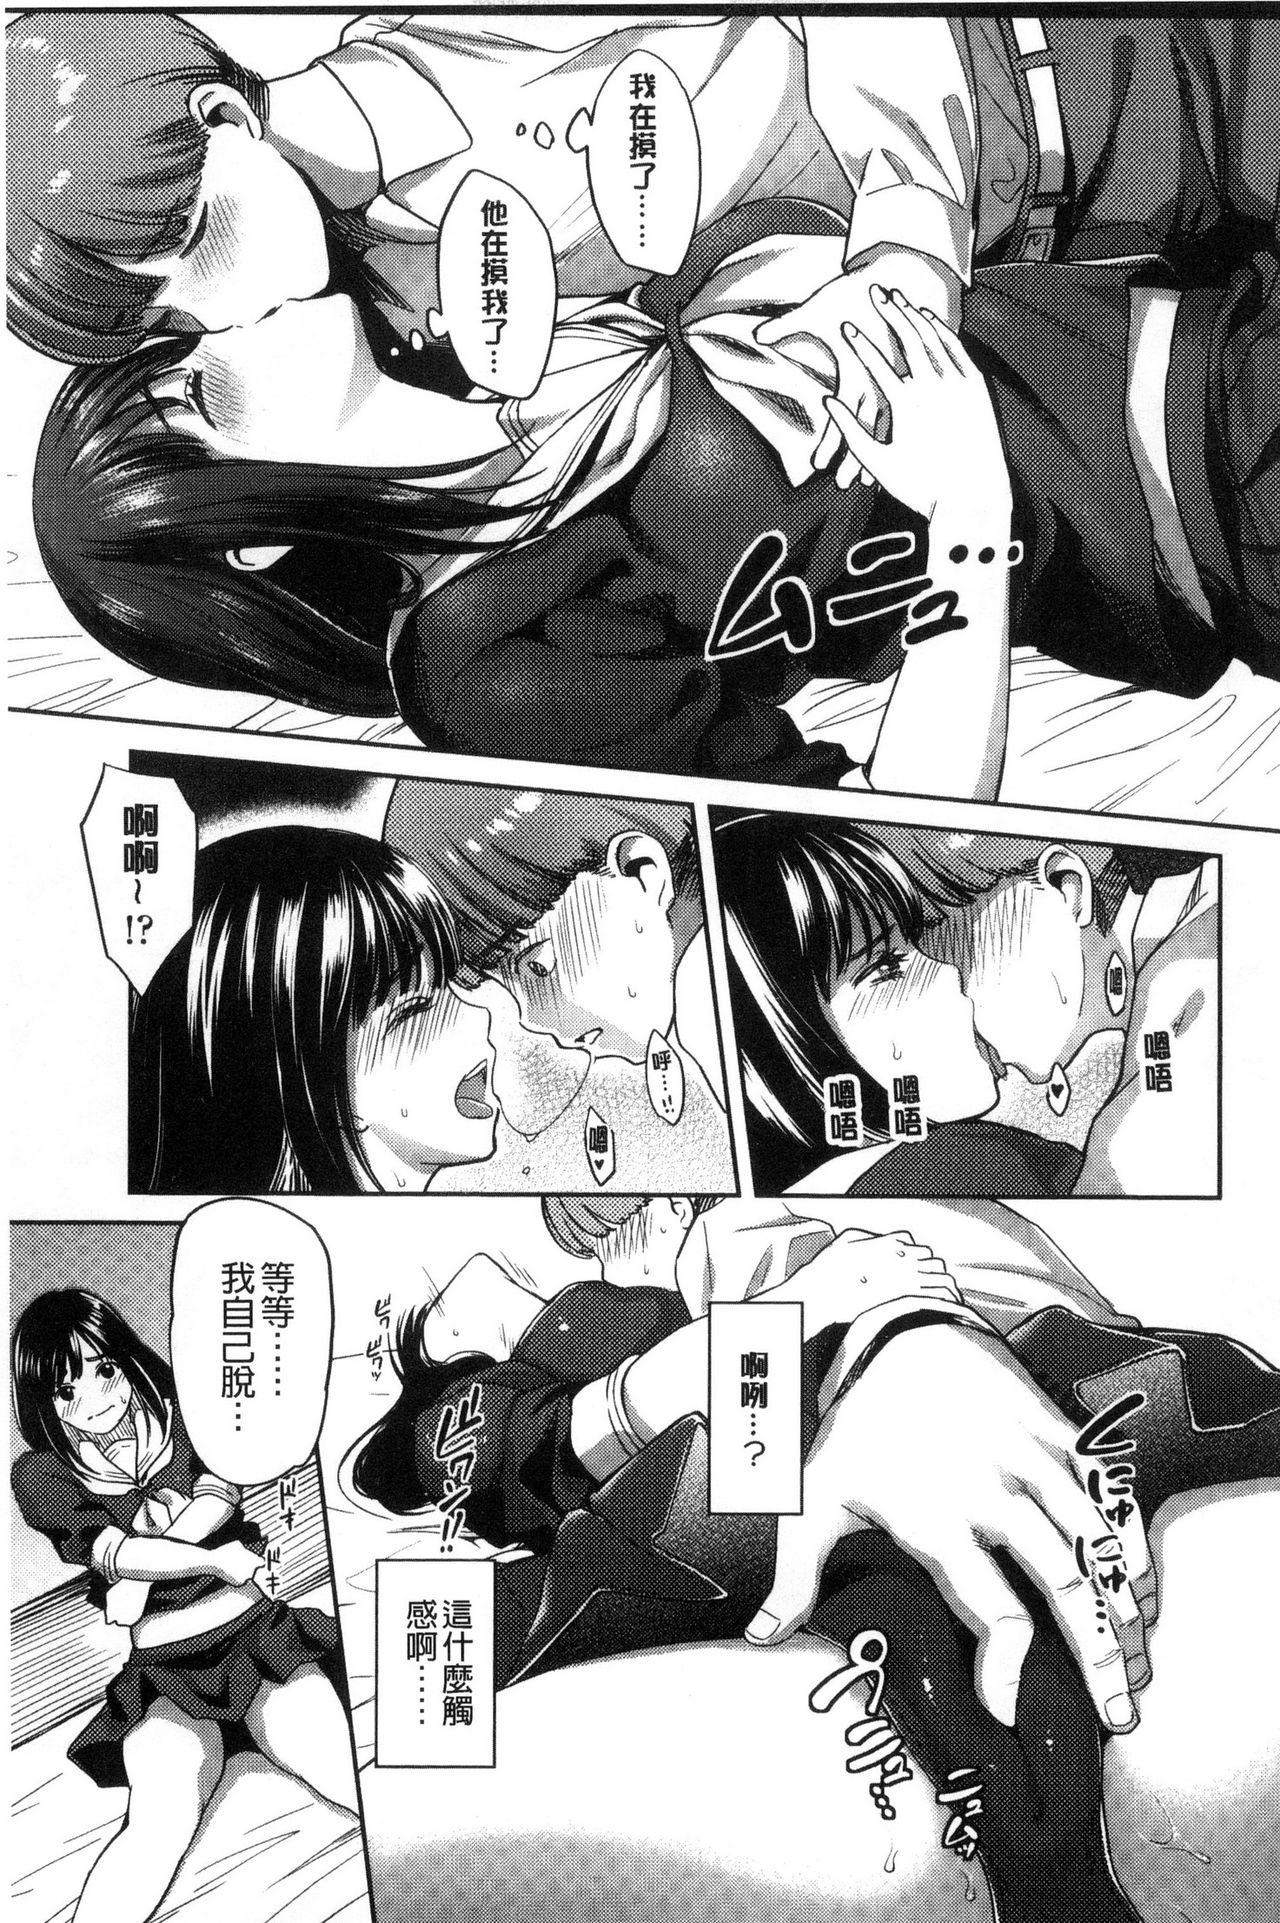 Seifuku no Mama Aishinasai! - Love in school uniform 112